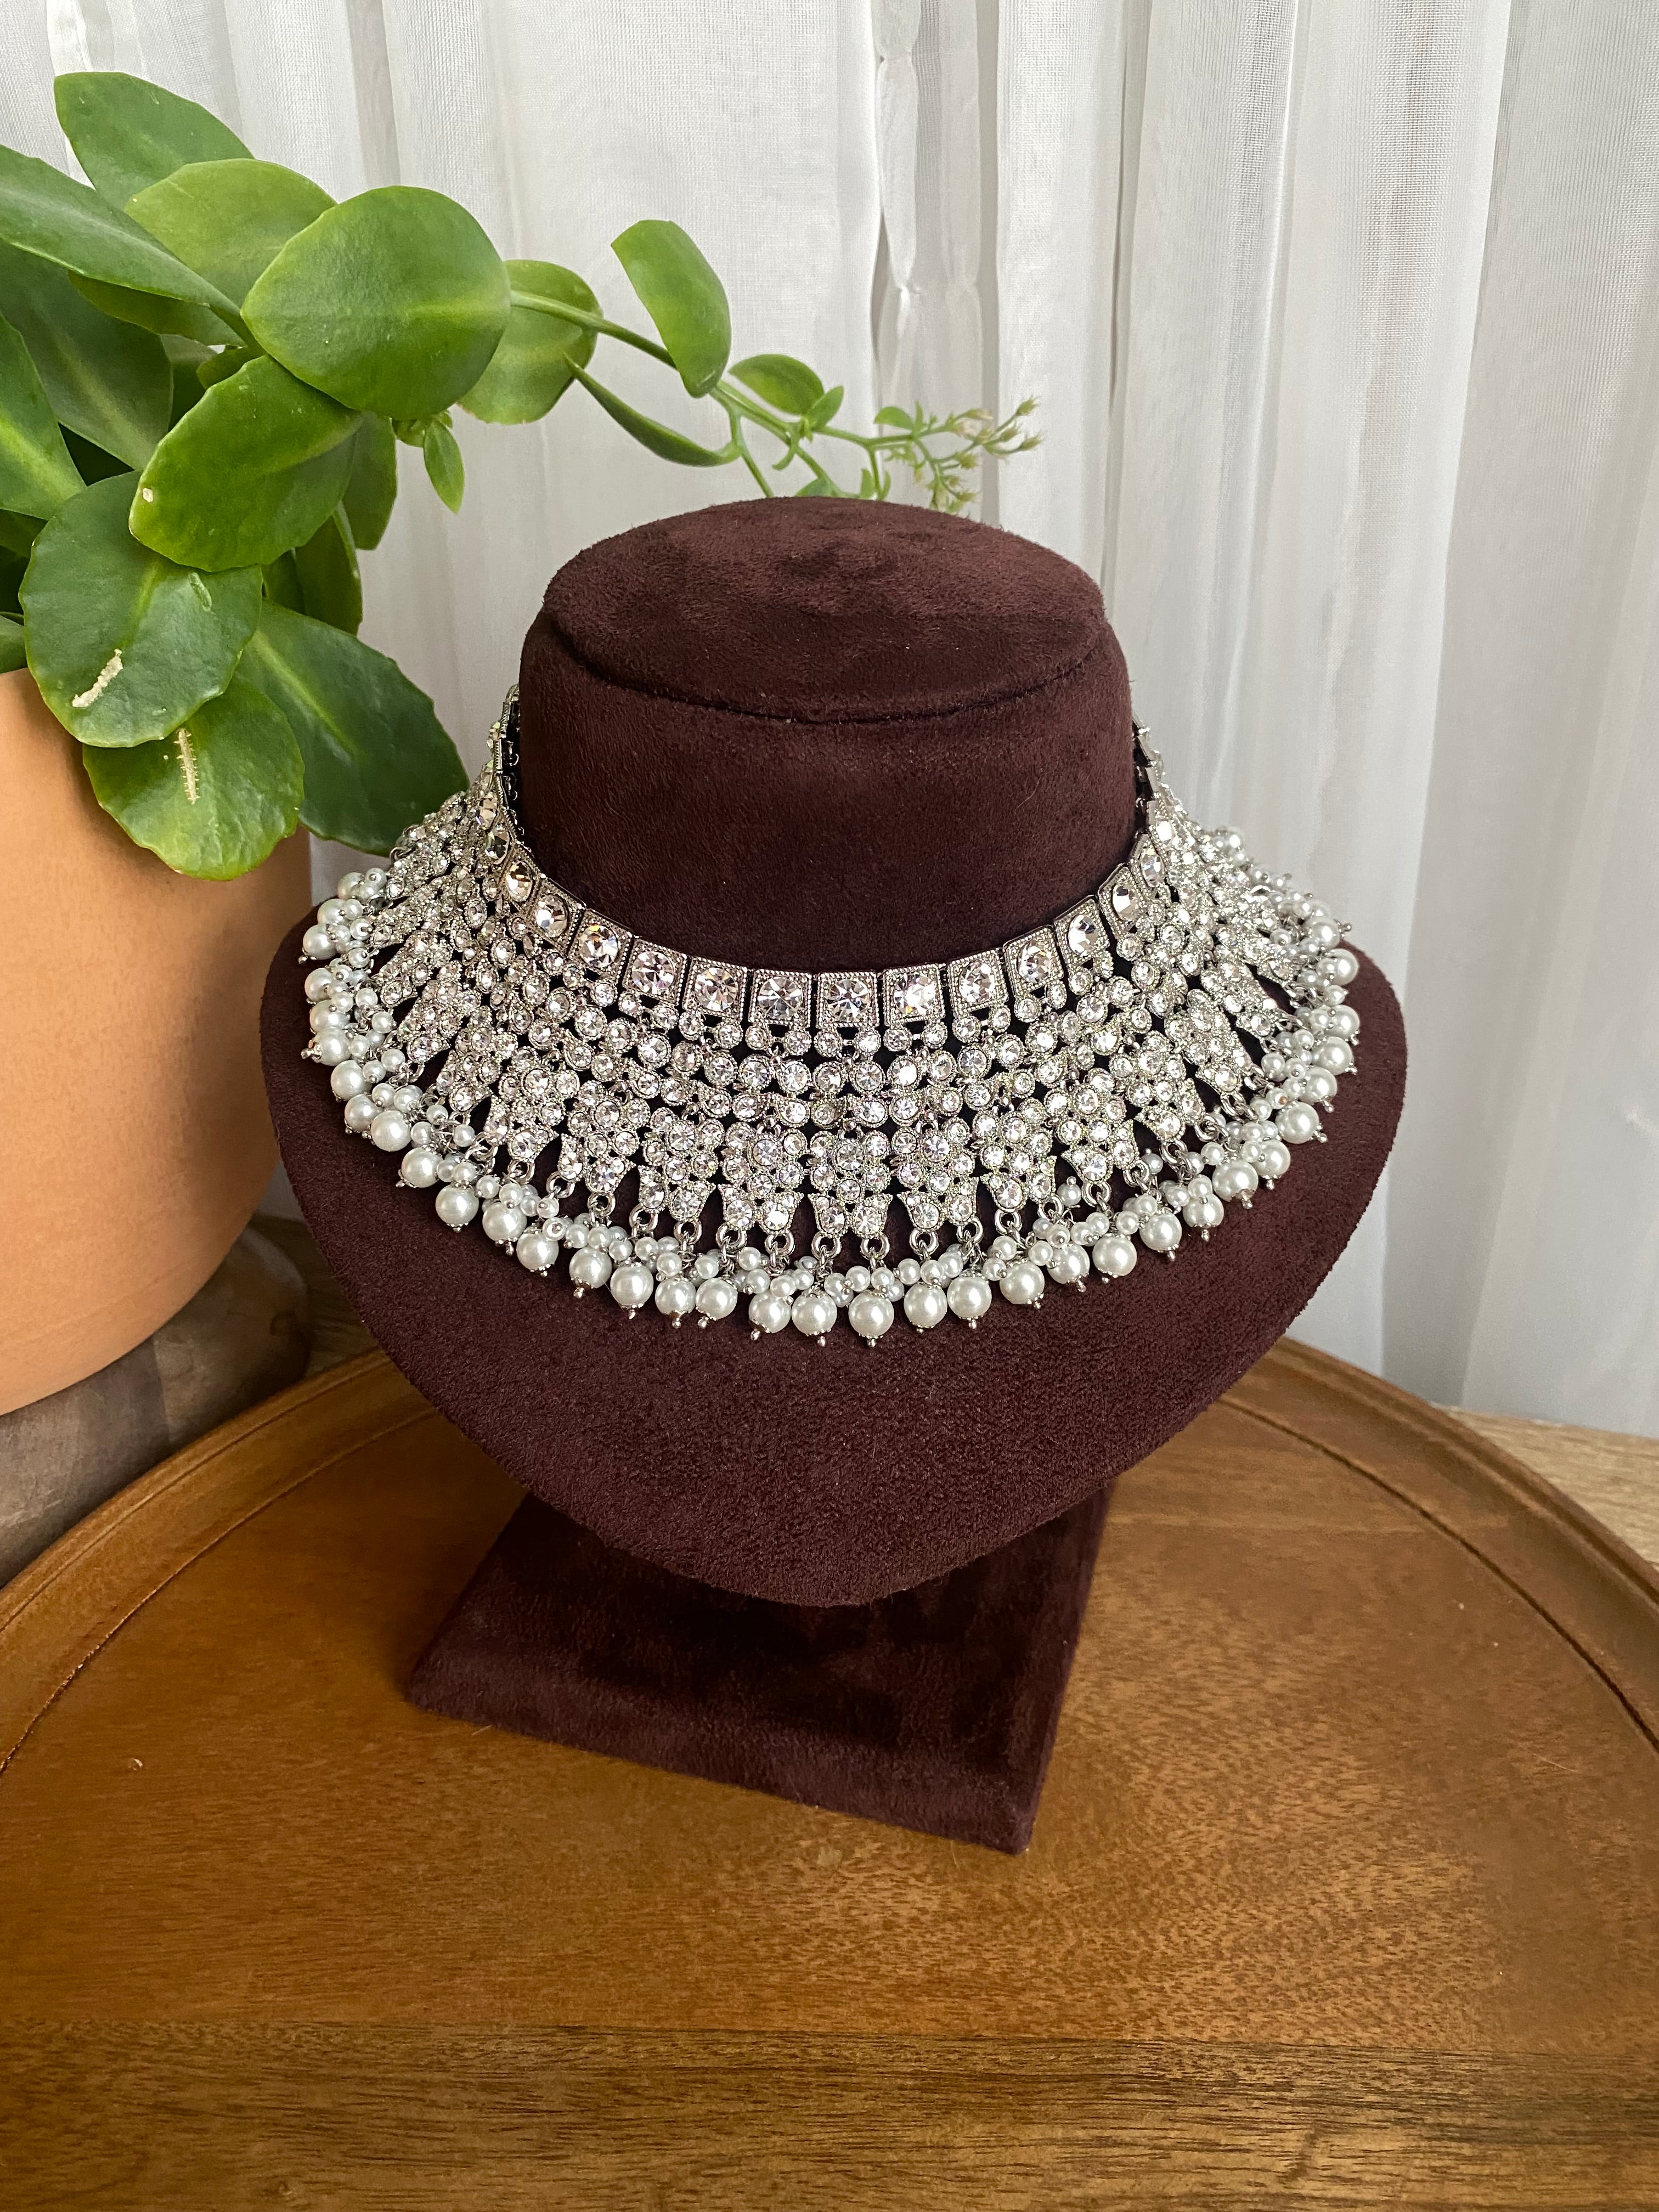 Rupa Bridal necklace